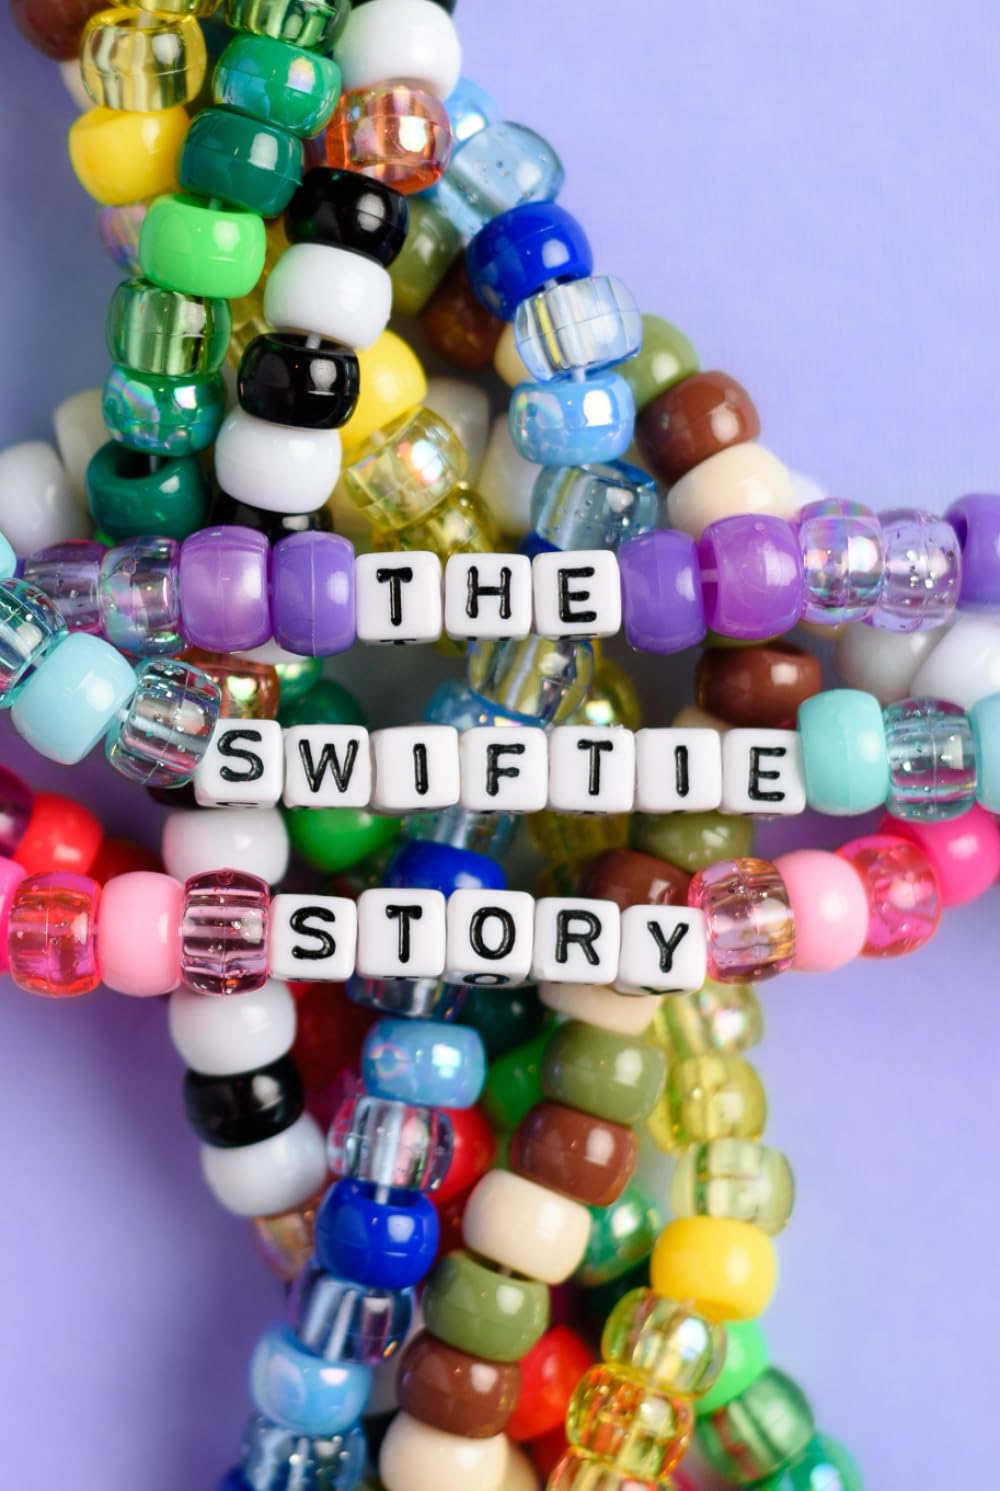 The Swiftie Story